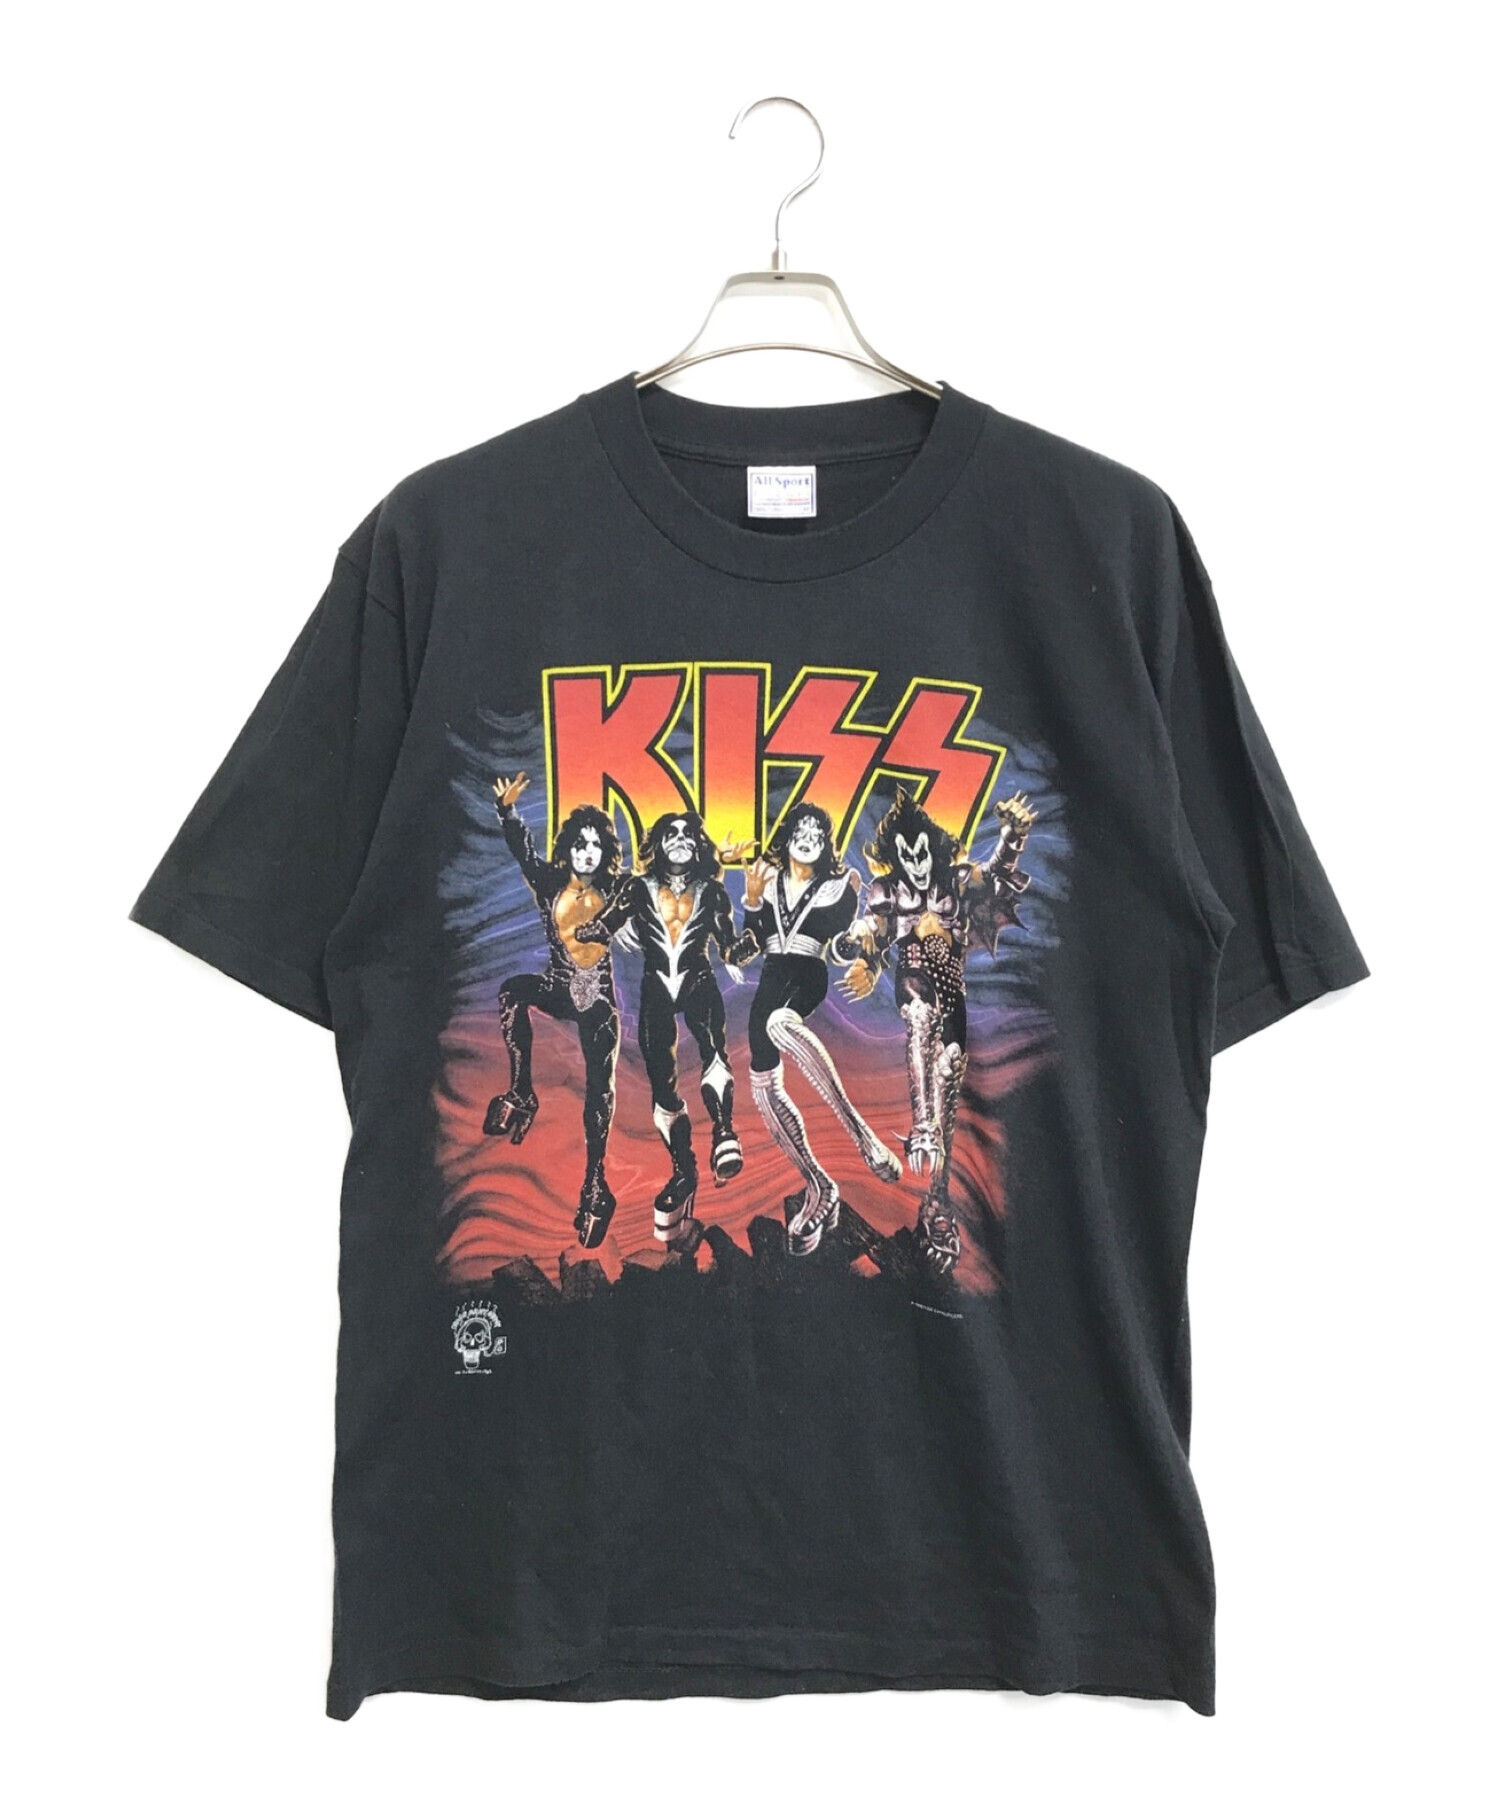 バンドTシャツ (バンドTシャツ) [古着]90's KISS バンドTシャツ ブラック サイズ:L